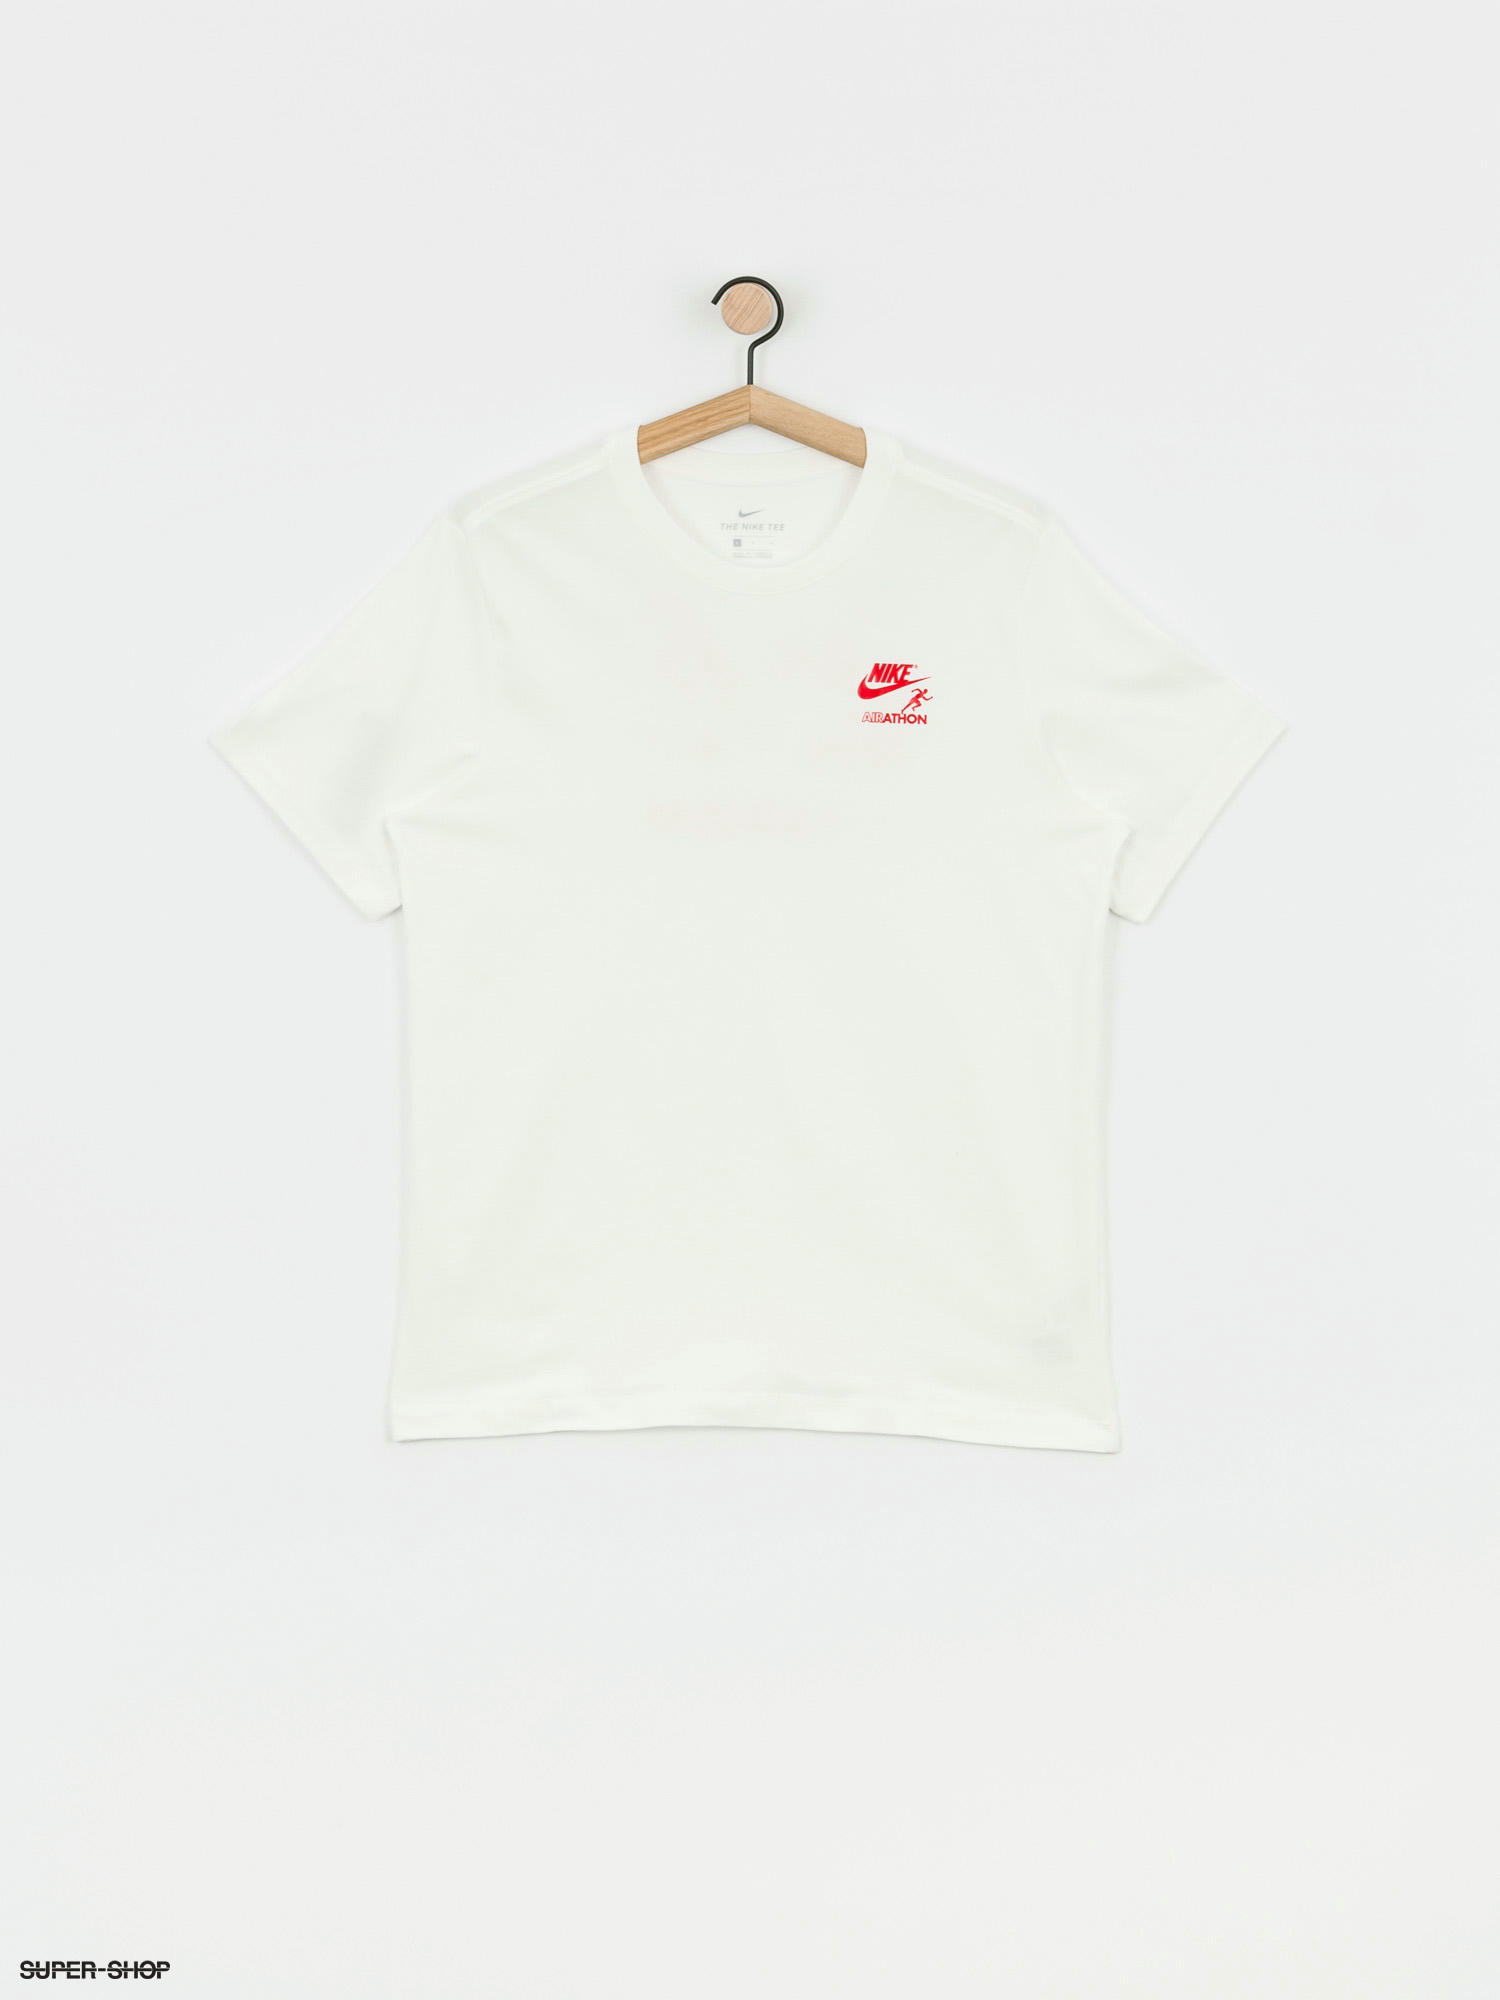 Nike Airathon Dstrd T-shirt (sail)